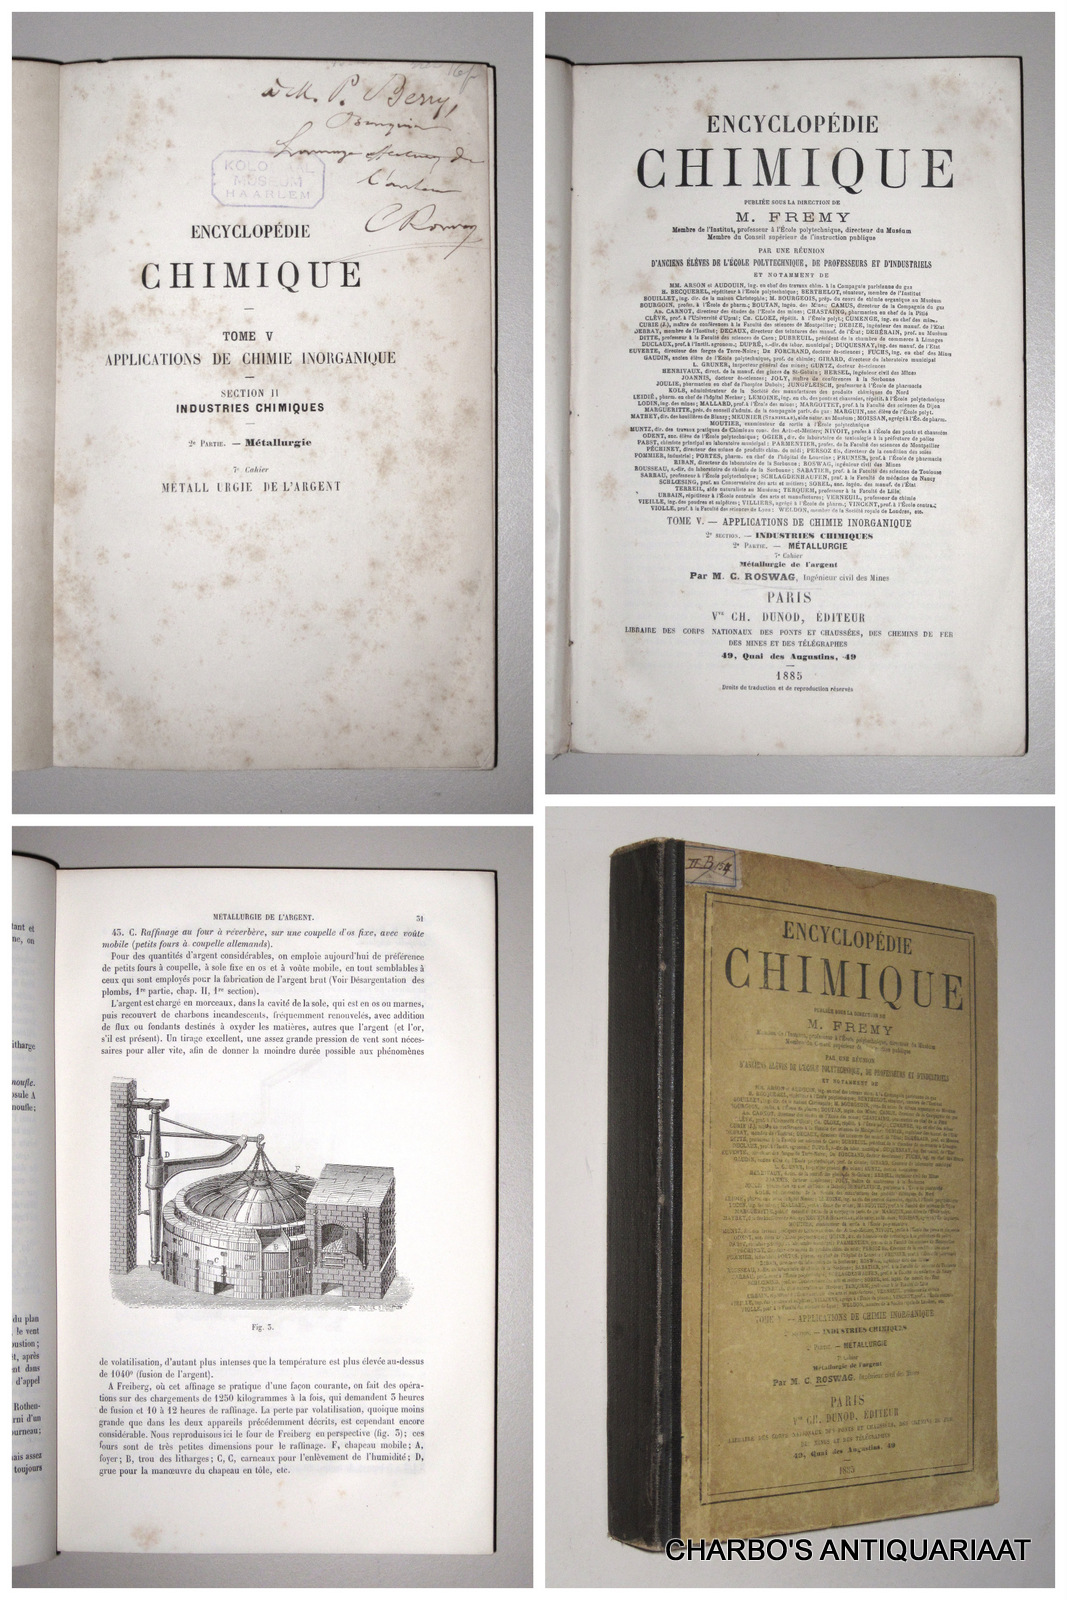 ROSWAG, C. (FREMY, M., ed.), -  Encyclopdie chimique, tome V, section II, 2e partie, 7e cahier: Mtallurgie de l'argent.